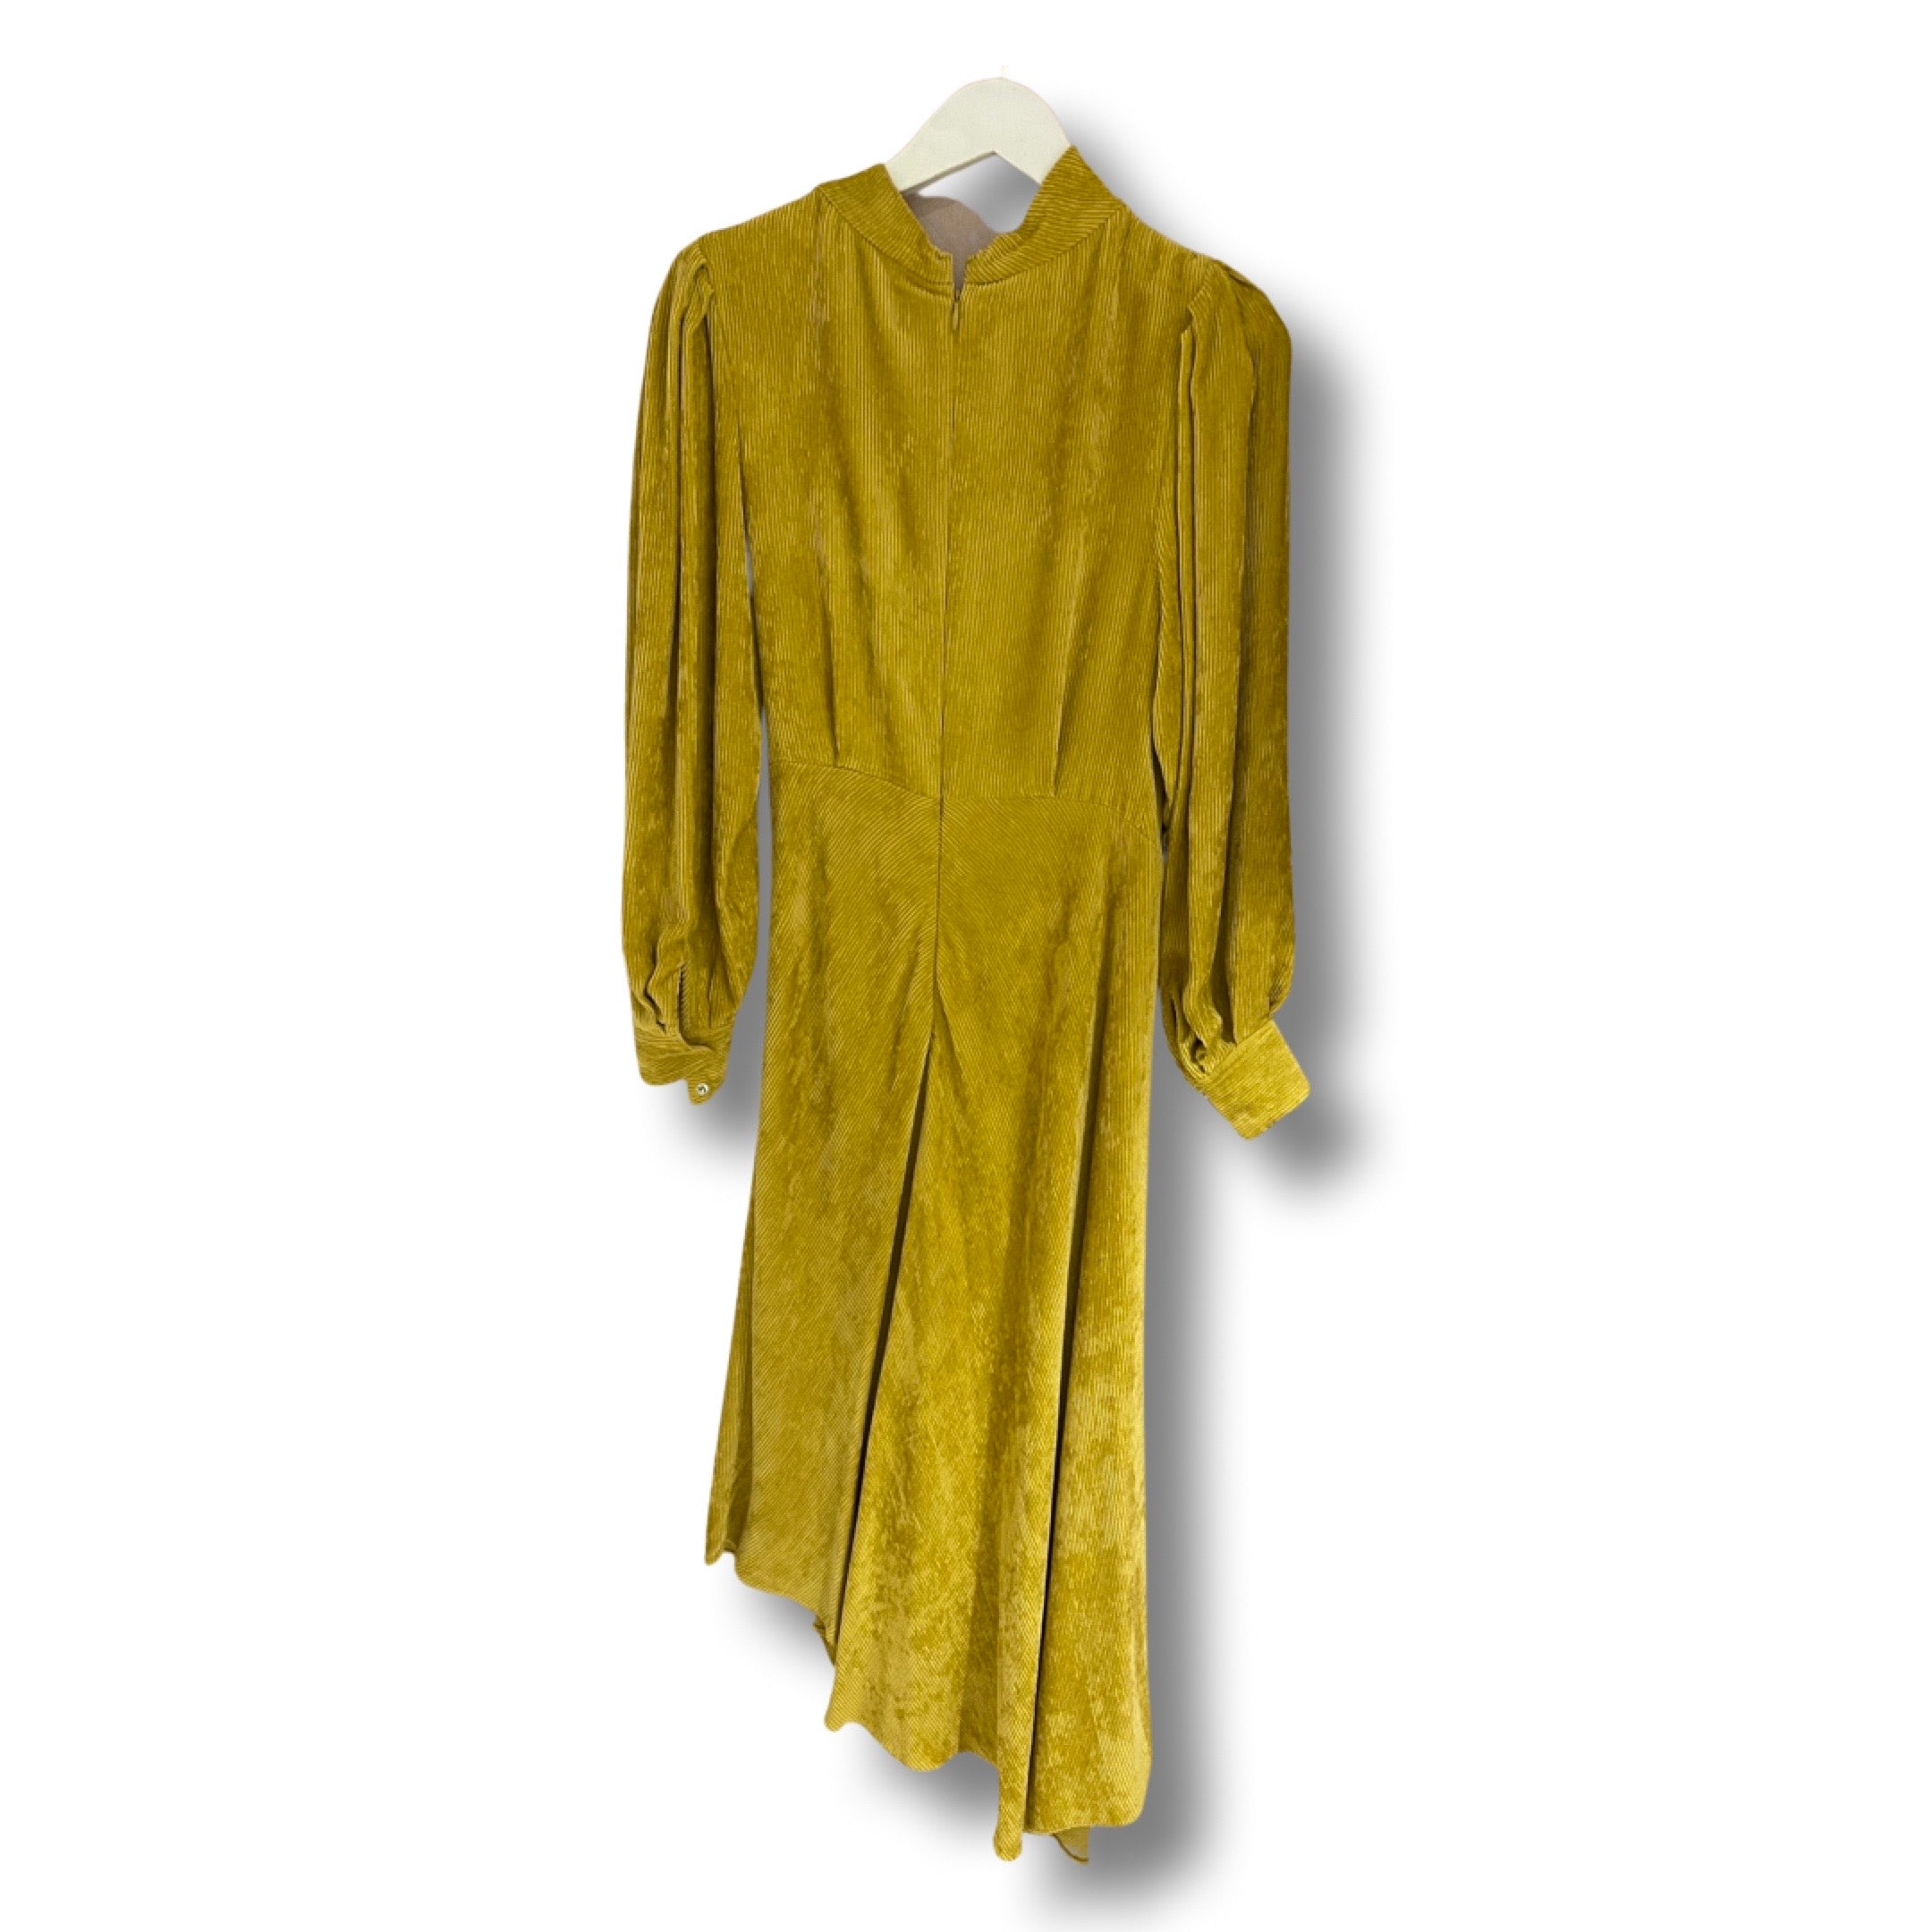 Ocher velvet dress by Isabel Marant.